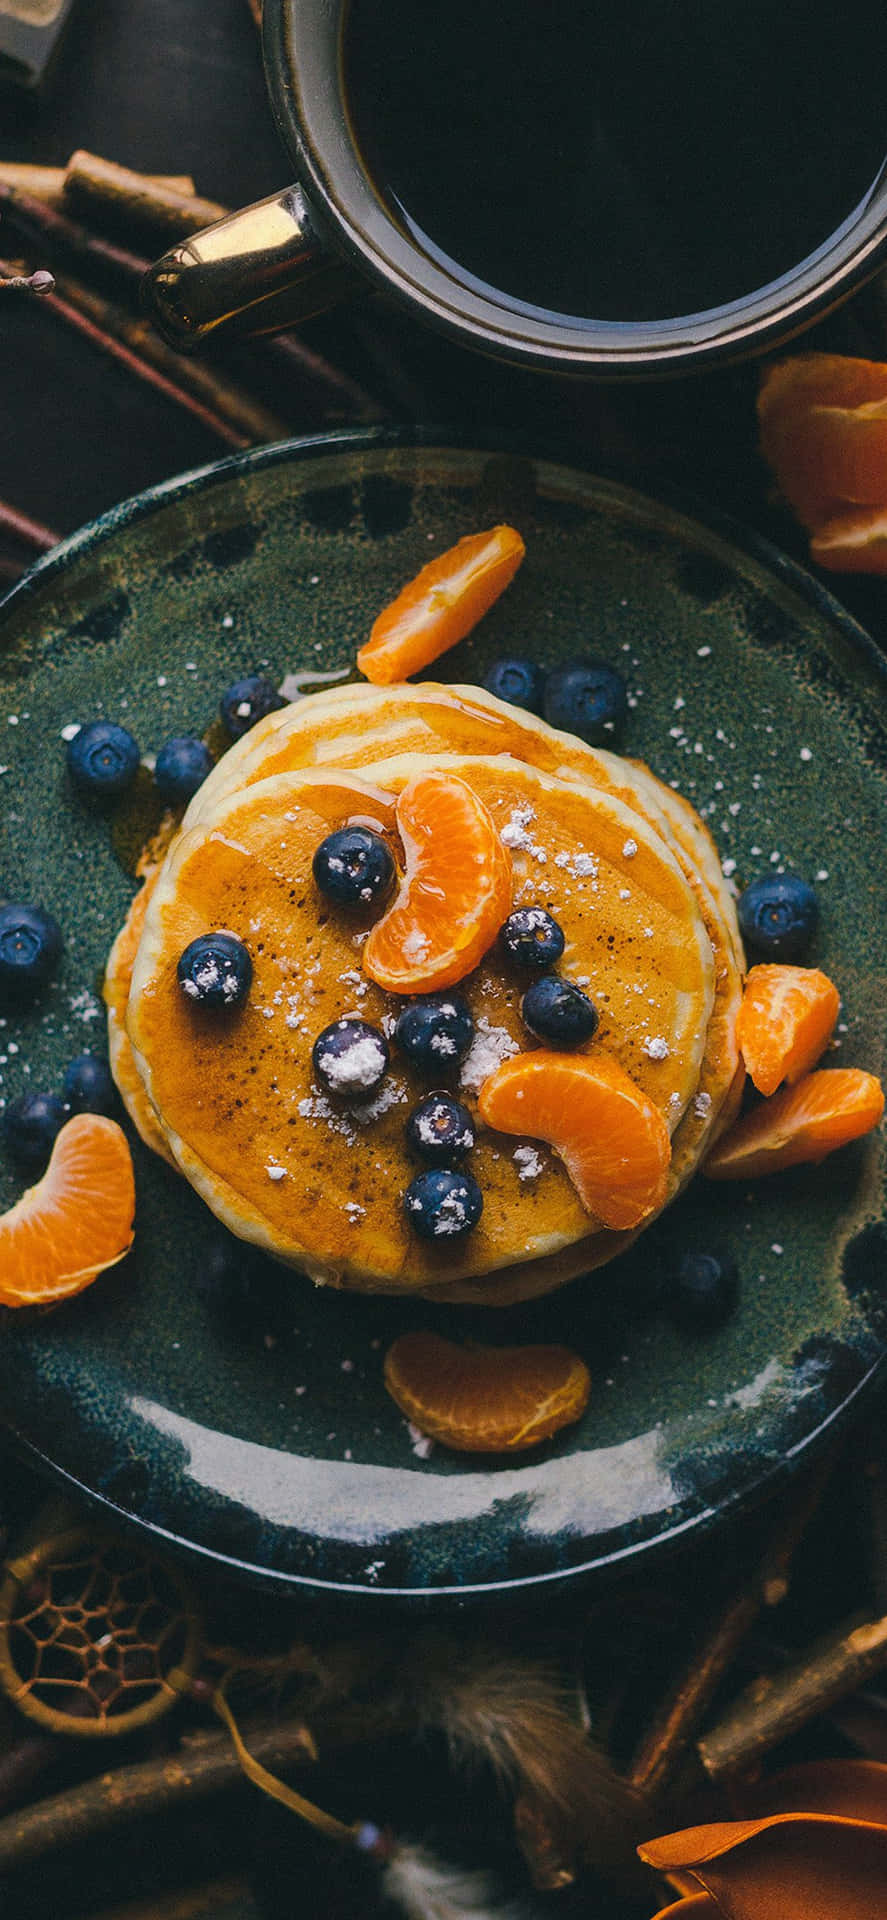 En tallerken med pandekager med appelsiner og blåbær Wallpaper